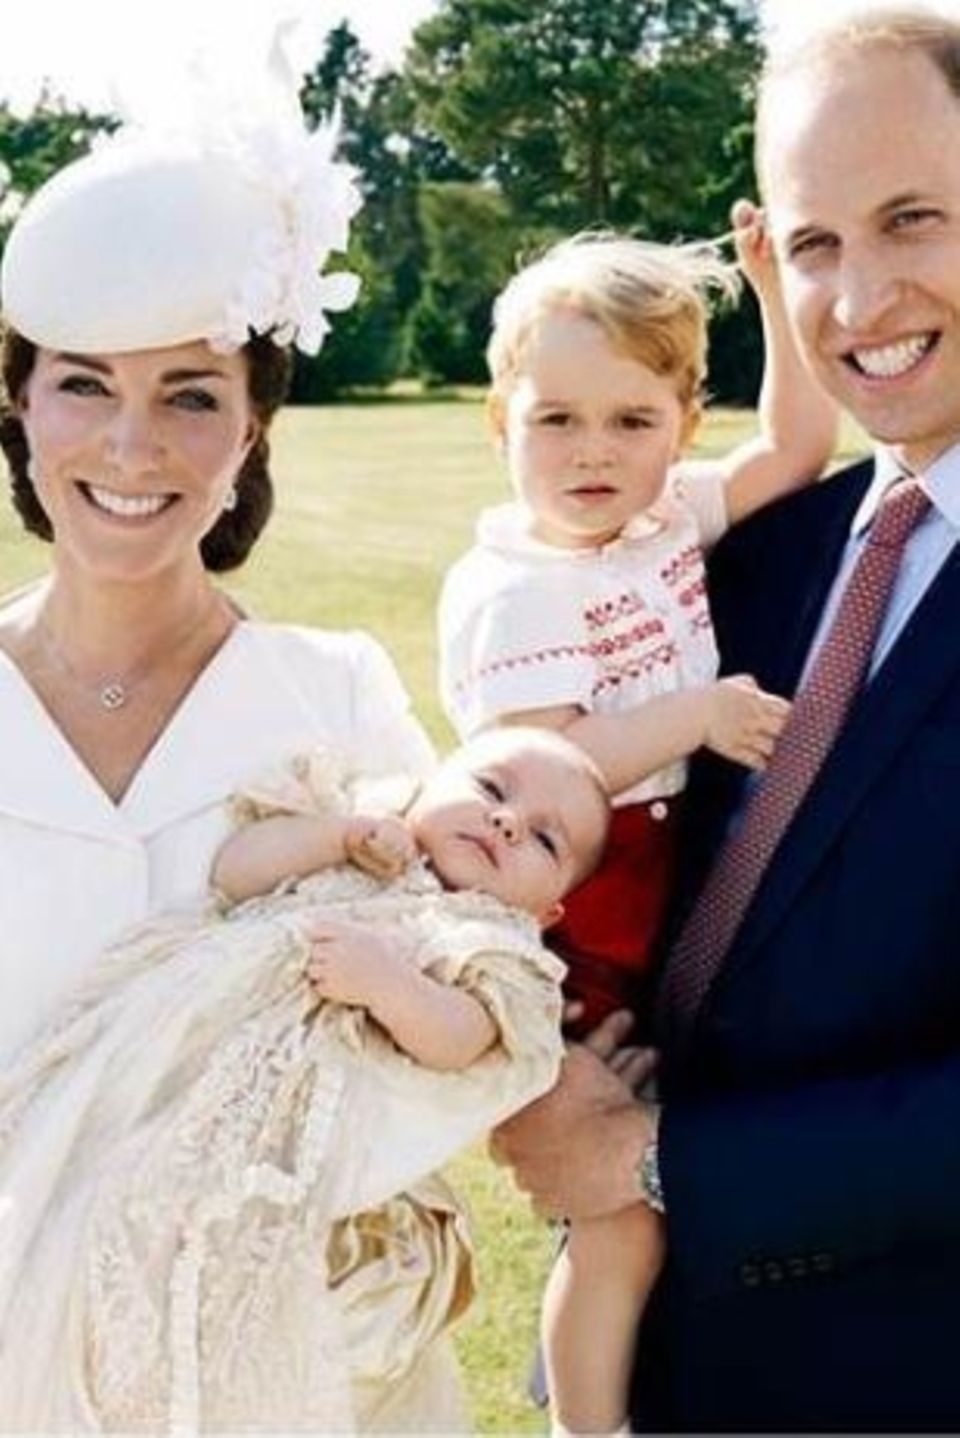 Das Herzogpaar von Cambridge präsentiert stolz seine süßen Kinder: den knapp zweijährigen Prinz George und die frisch getaufte Prinzessin Charlotte.